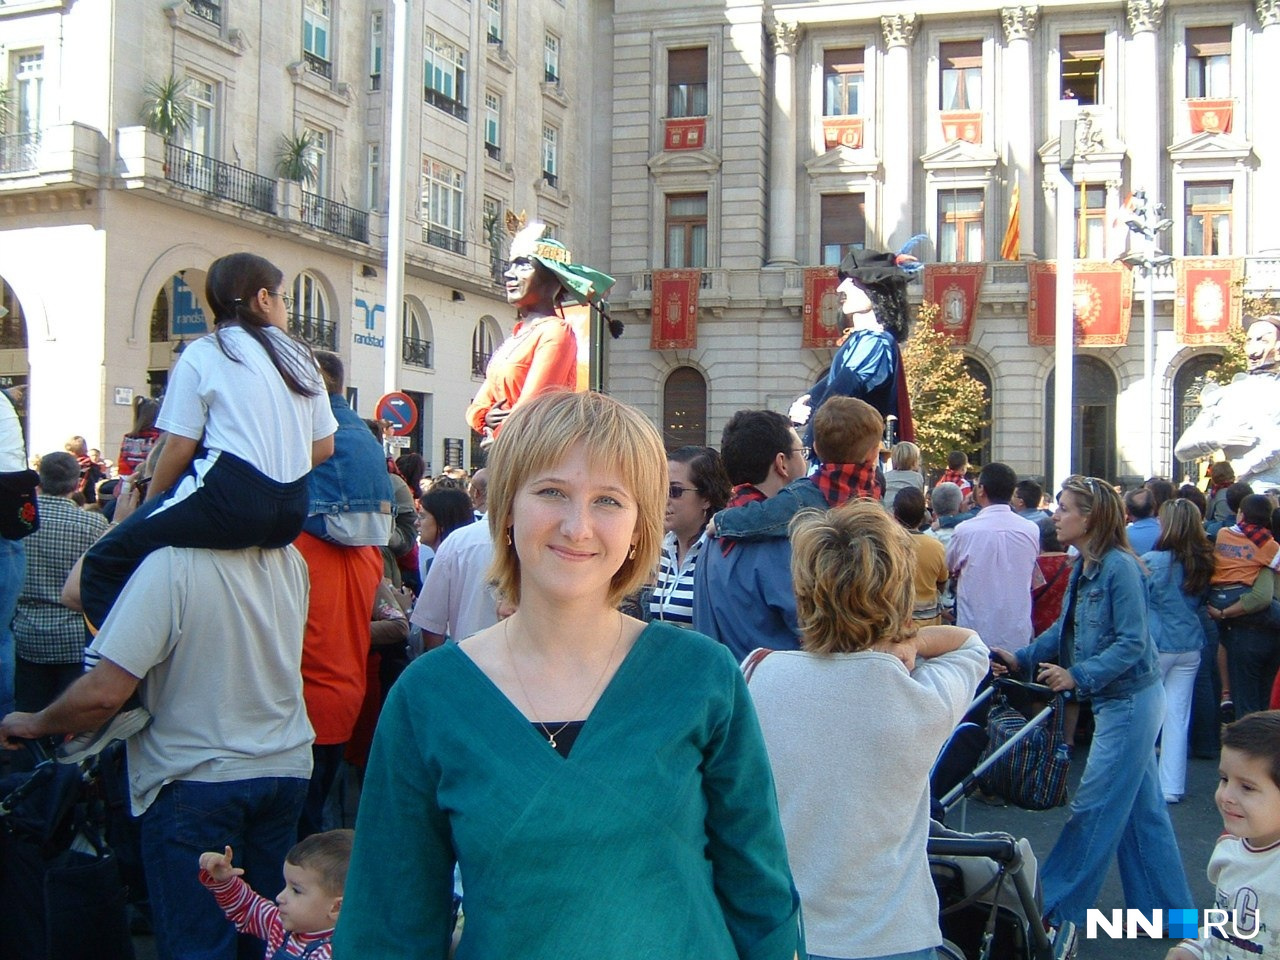 Праздники в Испании выглядят также, как и везде — люди выходят на улицы и площади и гуляют. Правда, всё это наполнено своей особенной атмосферой<br>